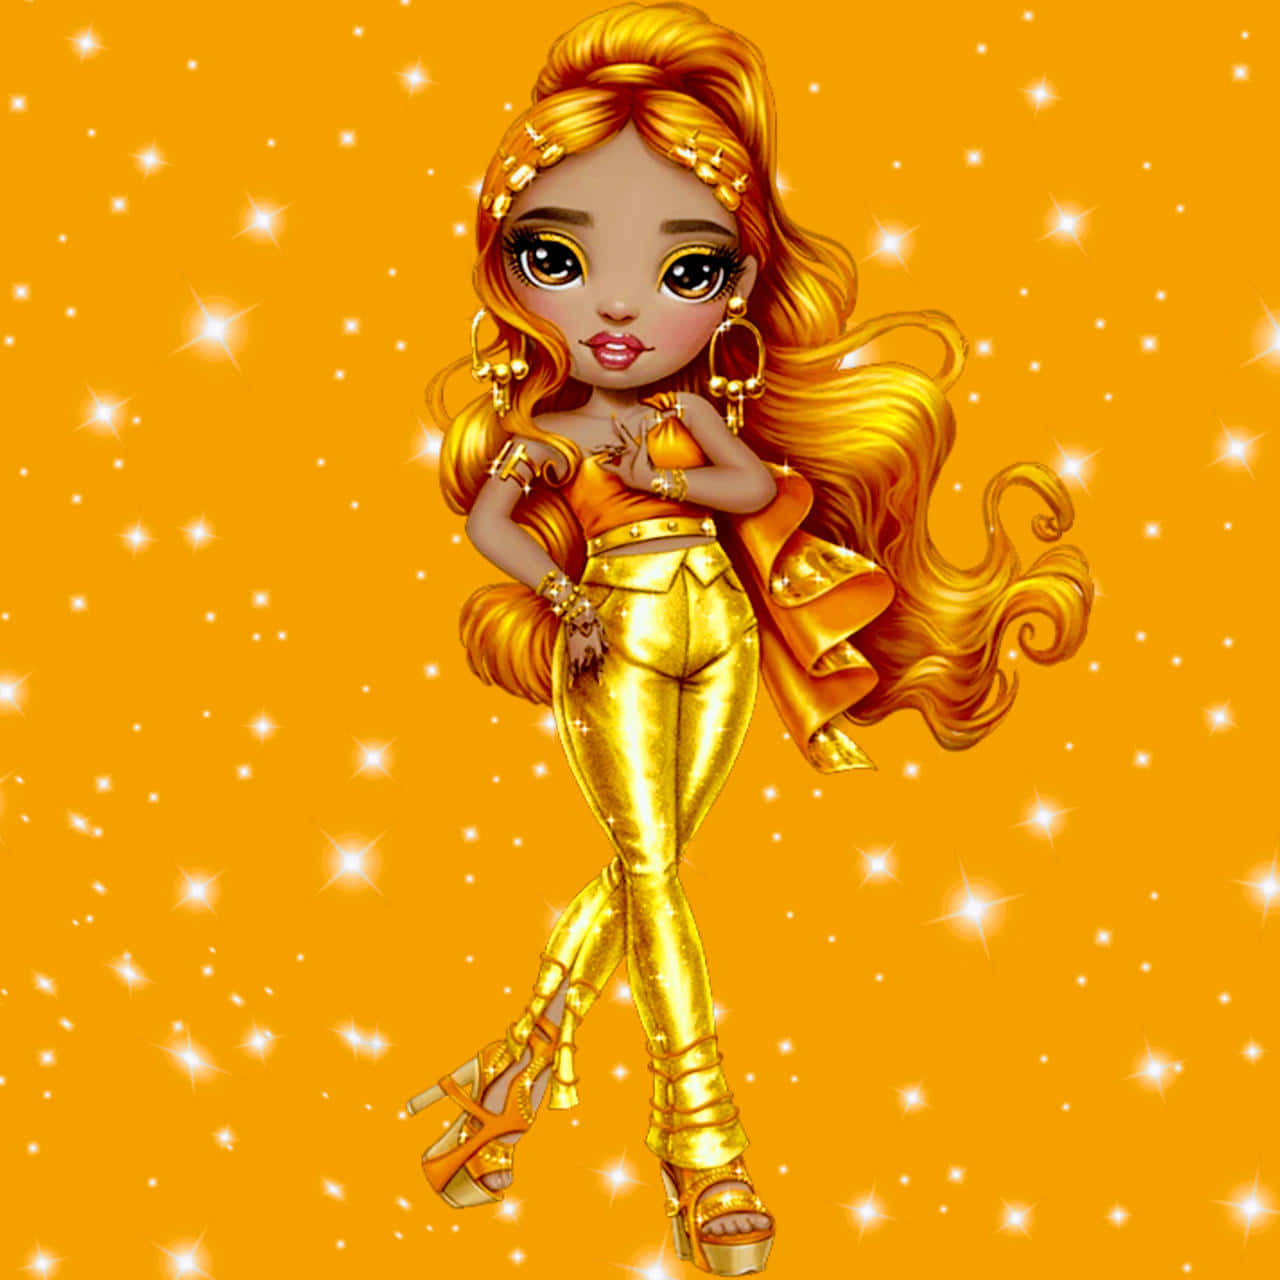 En pige i guld med langt hår og en gulddragt Wallpaper